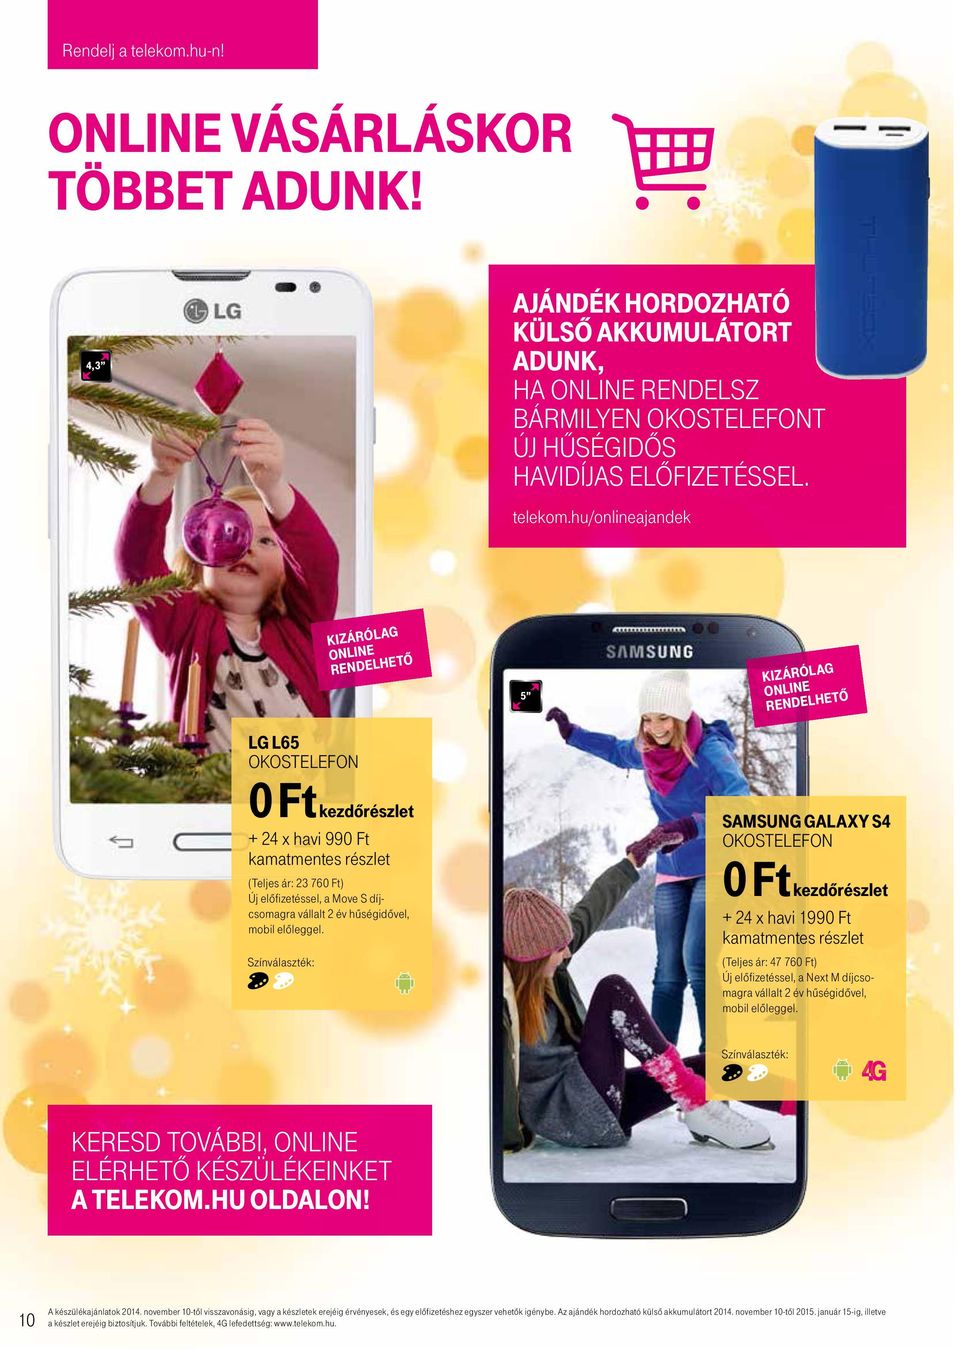 telekom 0 Ft kezdőrészlet Ünnepi ajándék ötletek a Telekomtól telekom.hu  rendelj online SorbAN ÁllÁS NÉlKÜl! - PDF Ingyenes letöltés